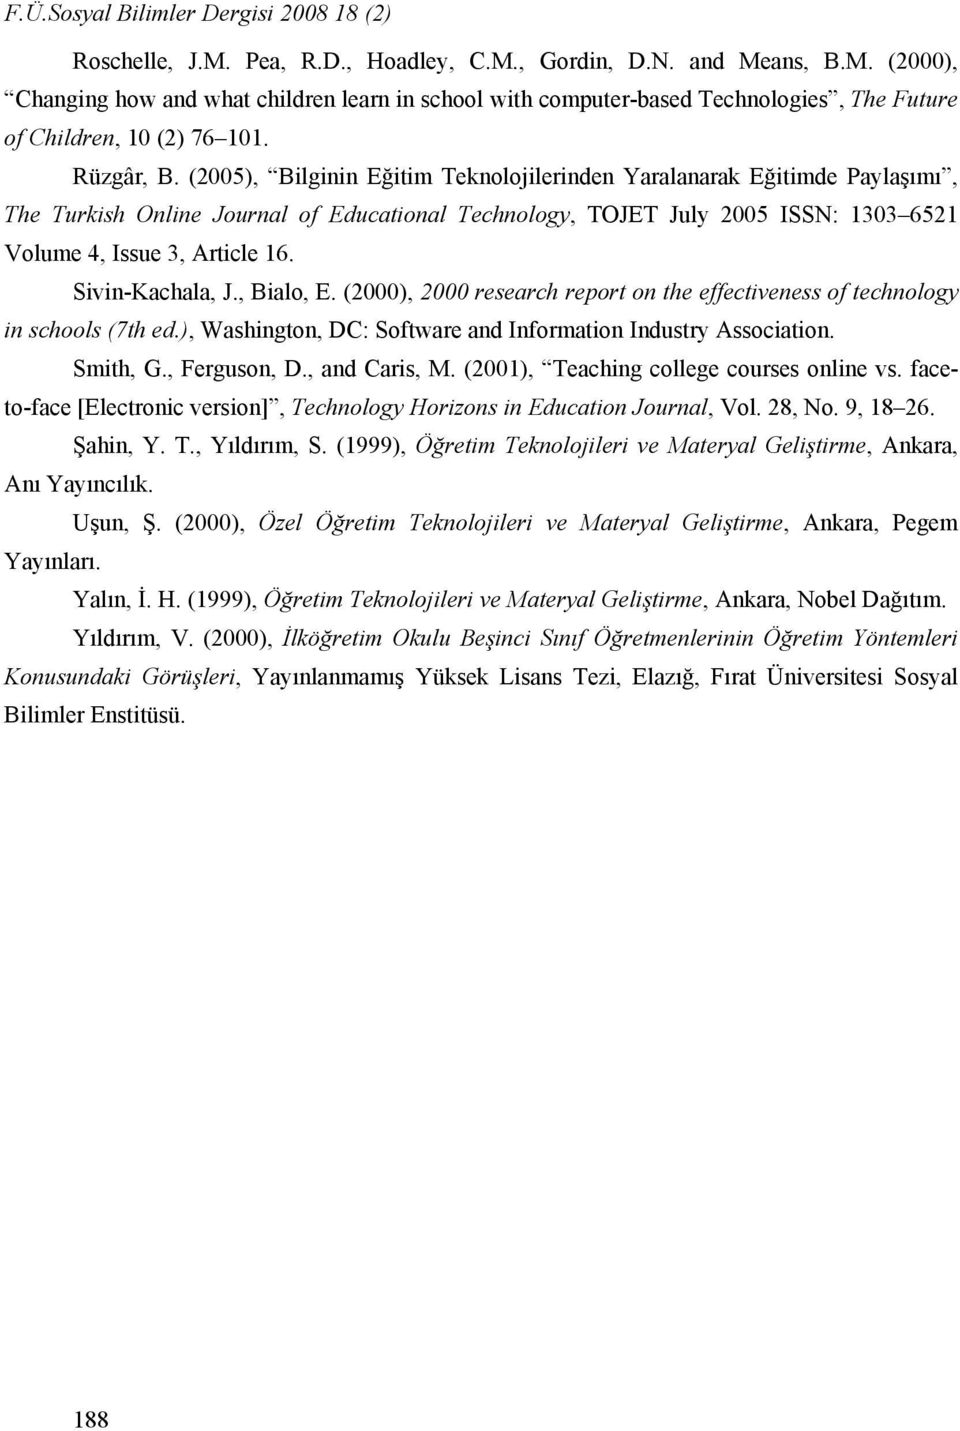 (2005), Bilginin Eğitim Teknolojilerinden Yaralanarak Eğitimde Paylaşımı, The Turkish Online Journal of Educational Technology, TOJET July 2005 ISSN: 1303 6521 Volume 4, Issue 3, Article 16.